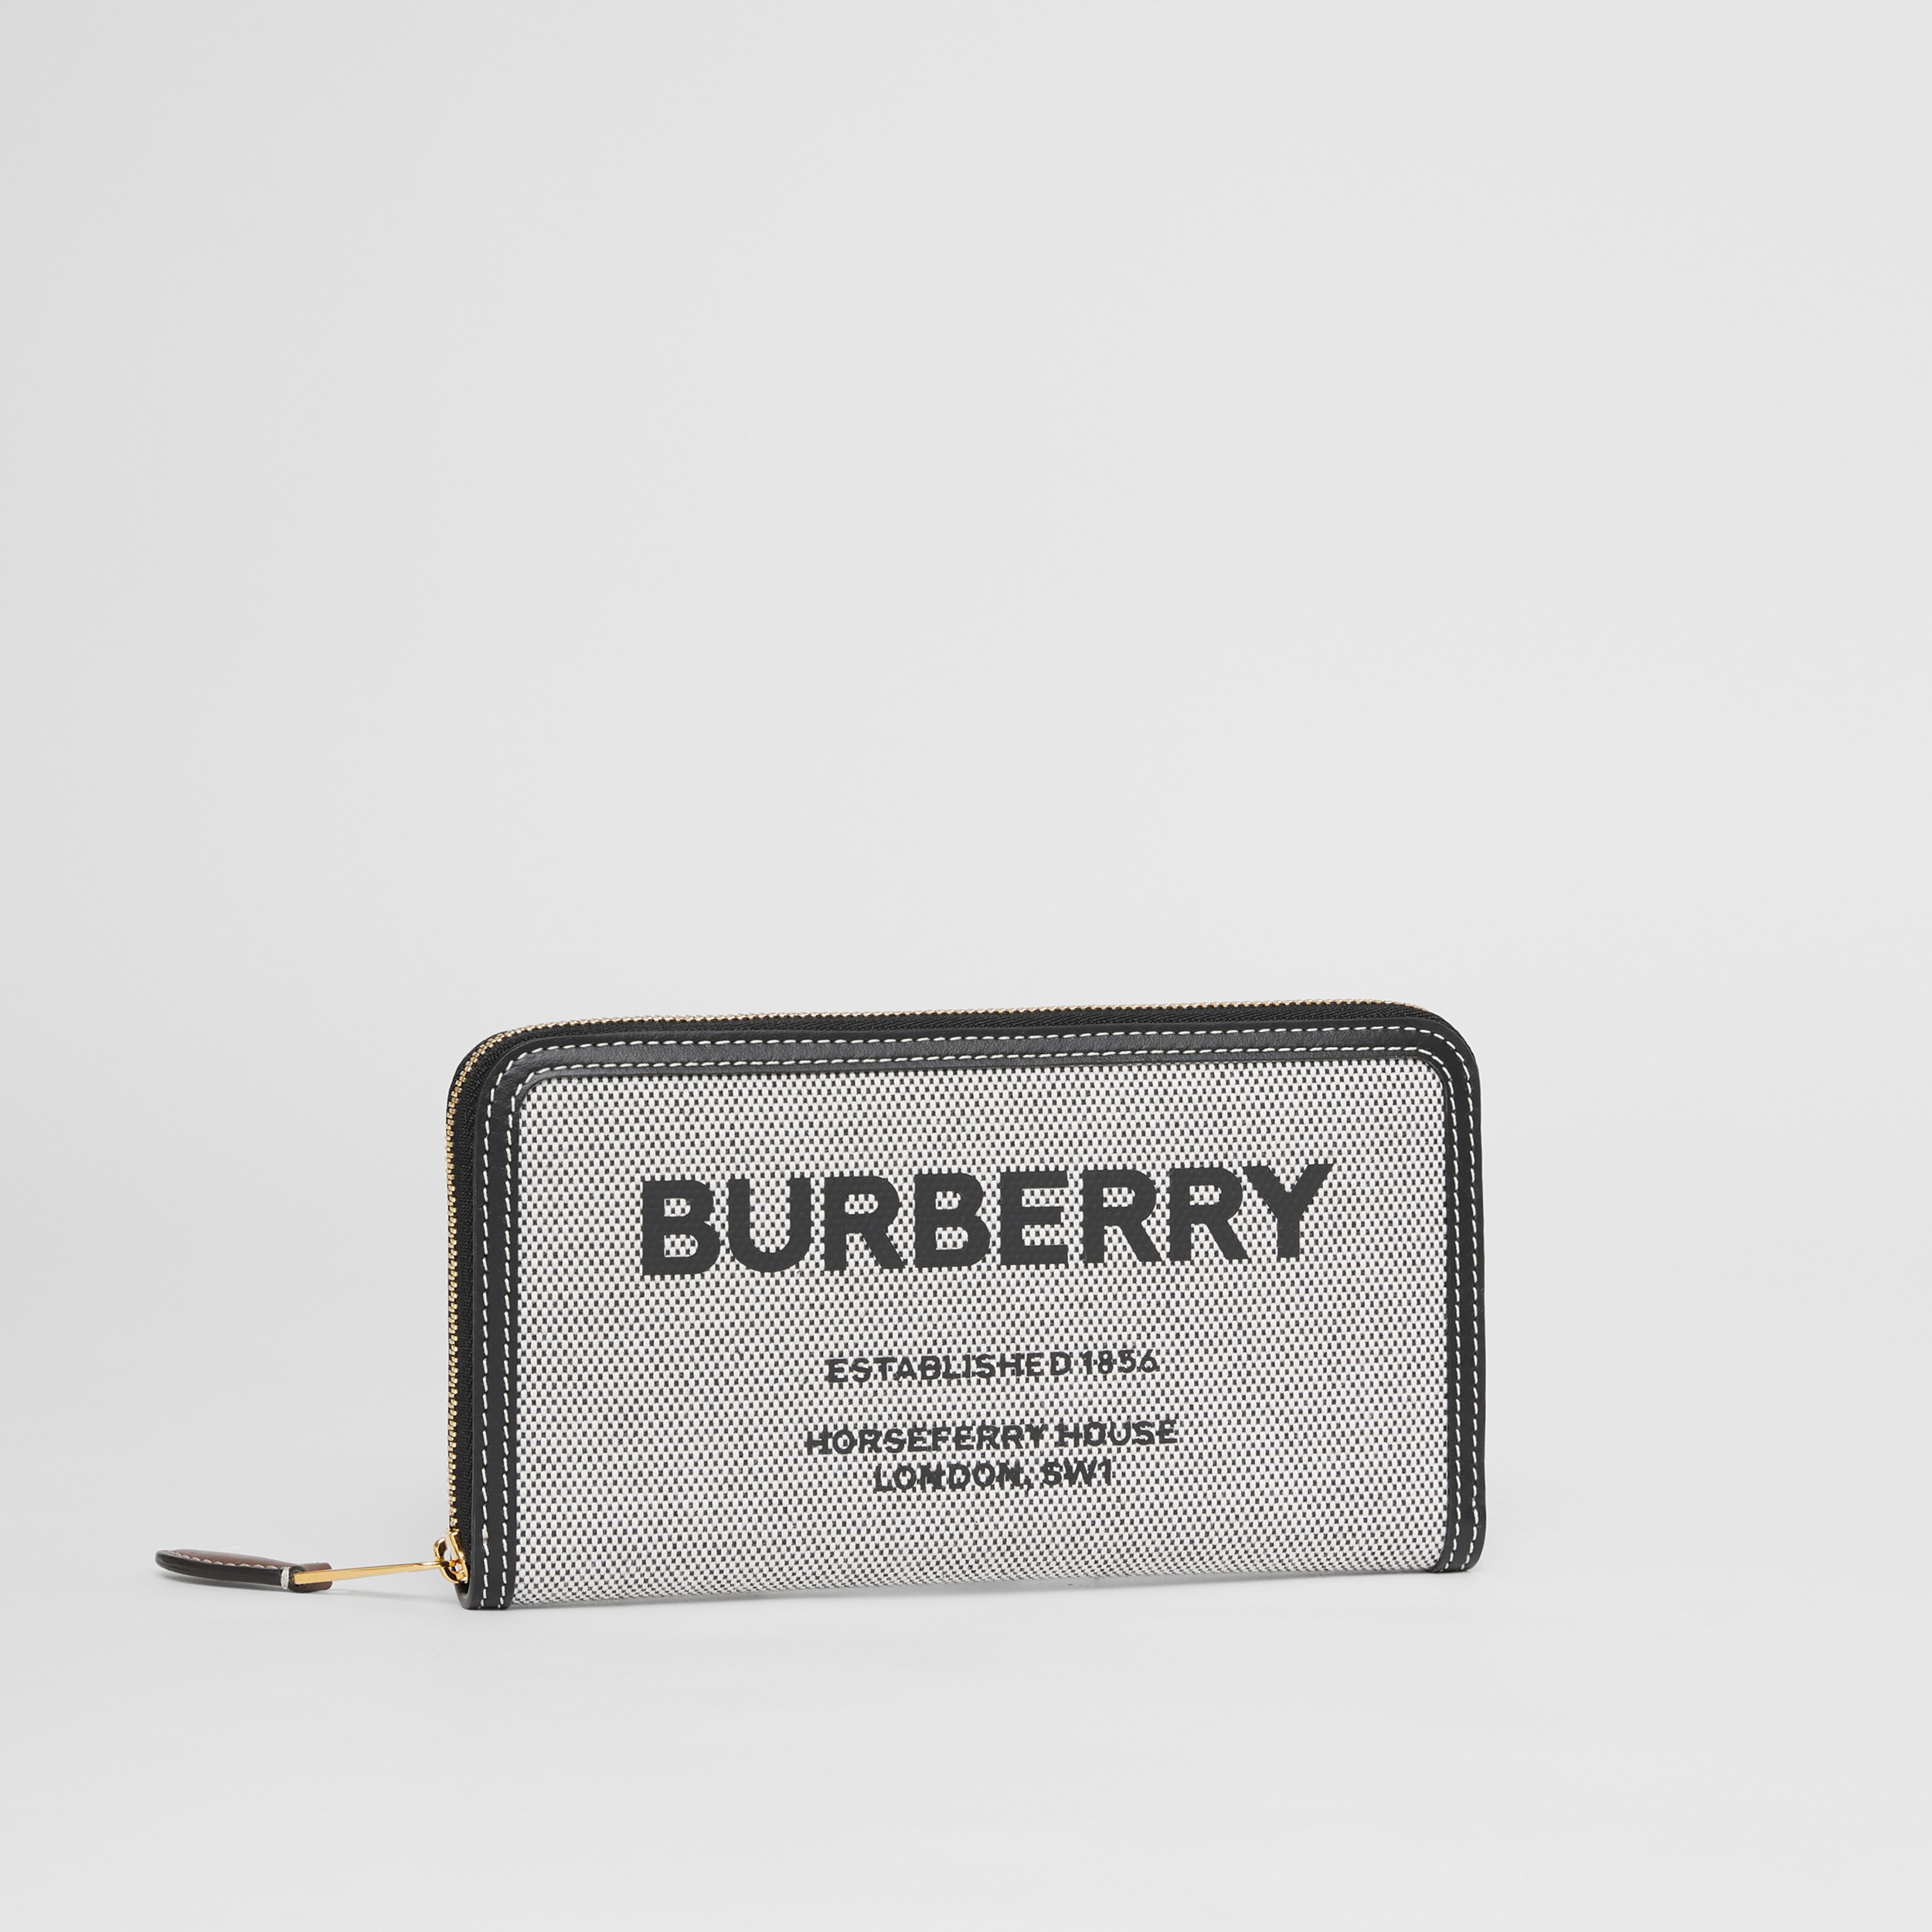 Brieftasche aus Canvas und Leder mit Horseferry-Aufdruck und Reißverschluss (Schwarz/hellbraun) - Damen | Burberry® - 4